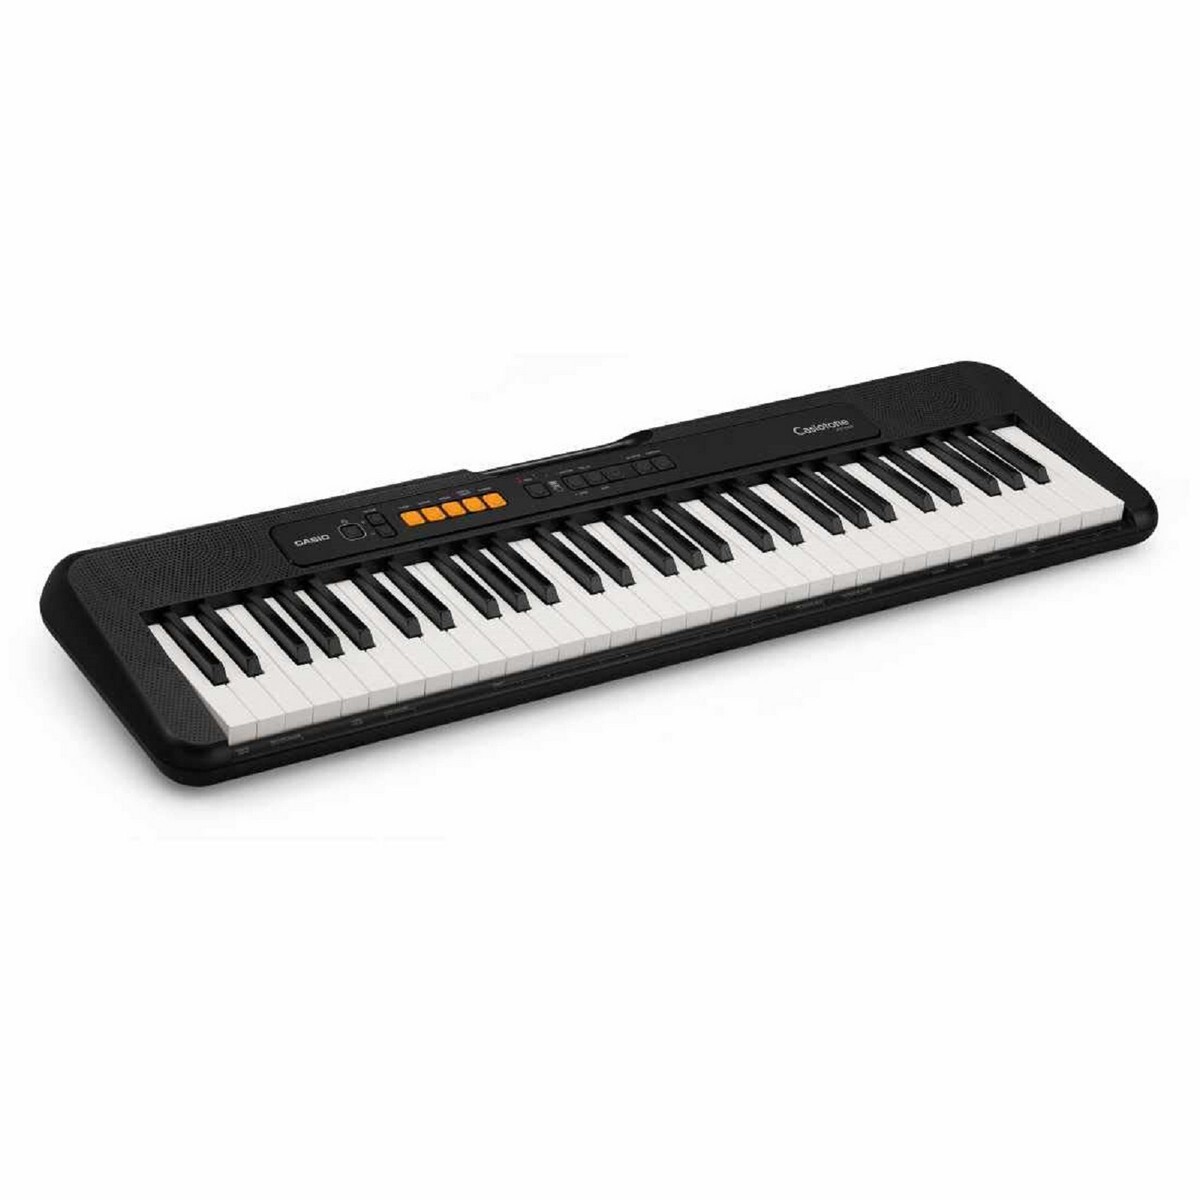 Casio Organ Keyboard CT-S100